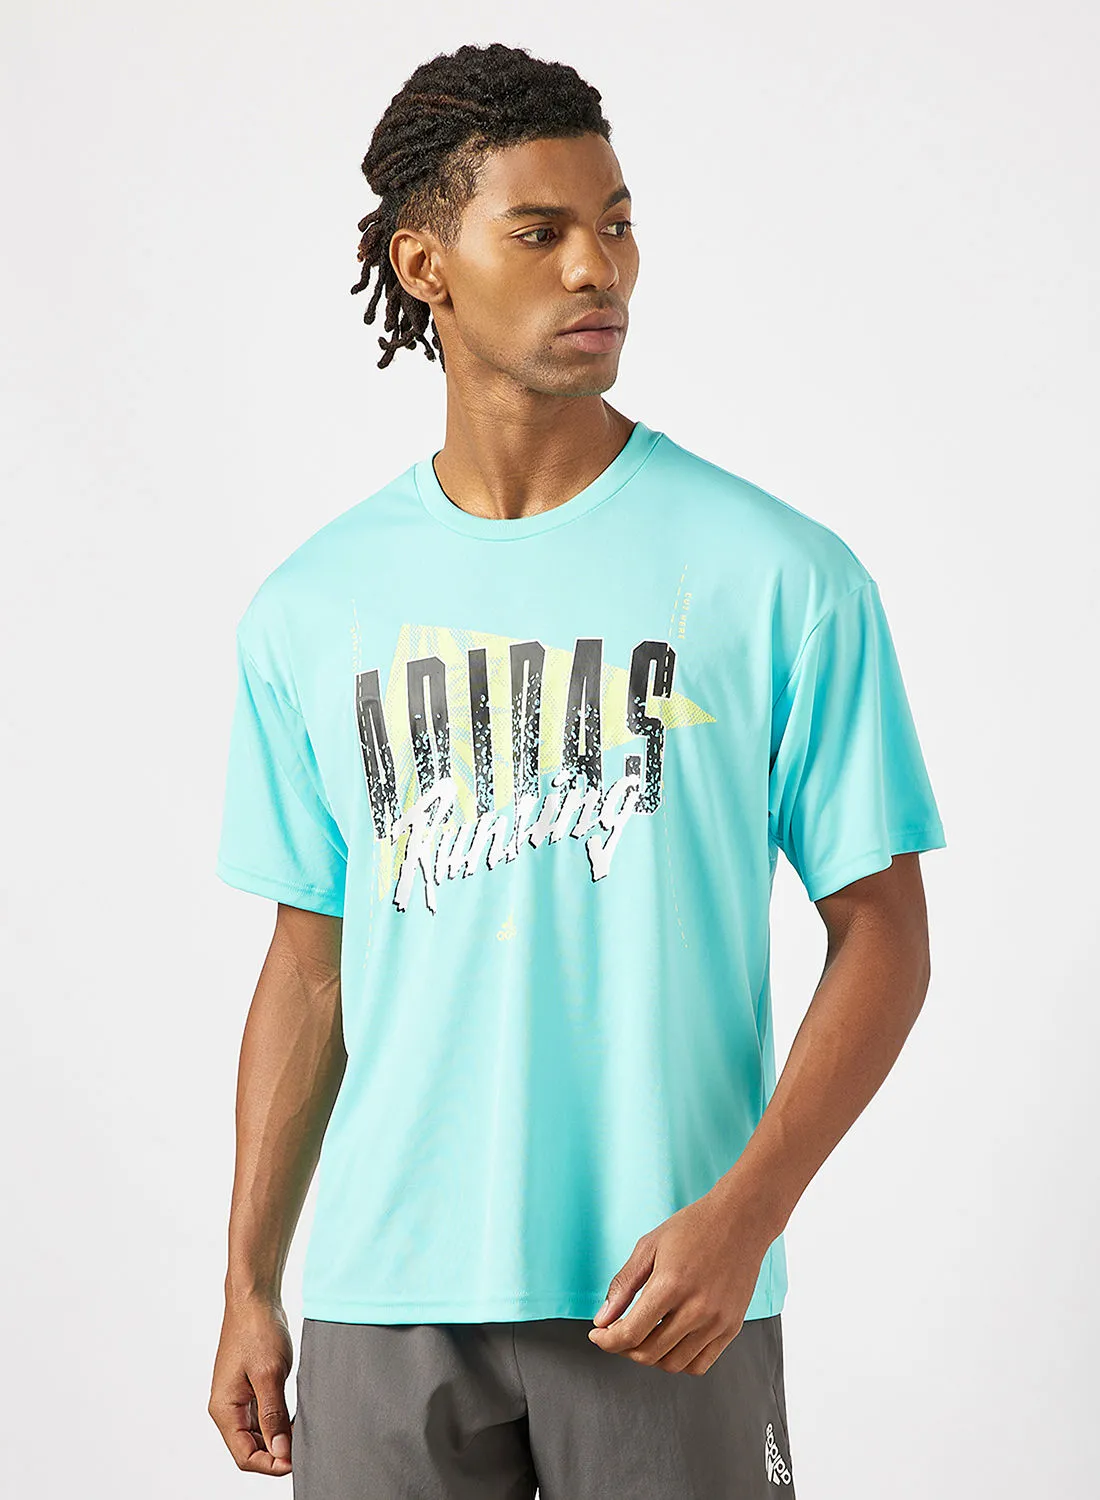 Adidas Unisex Running Graphic T-Shirt